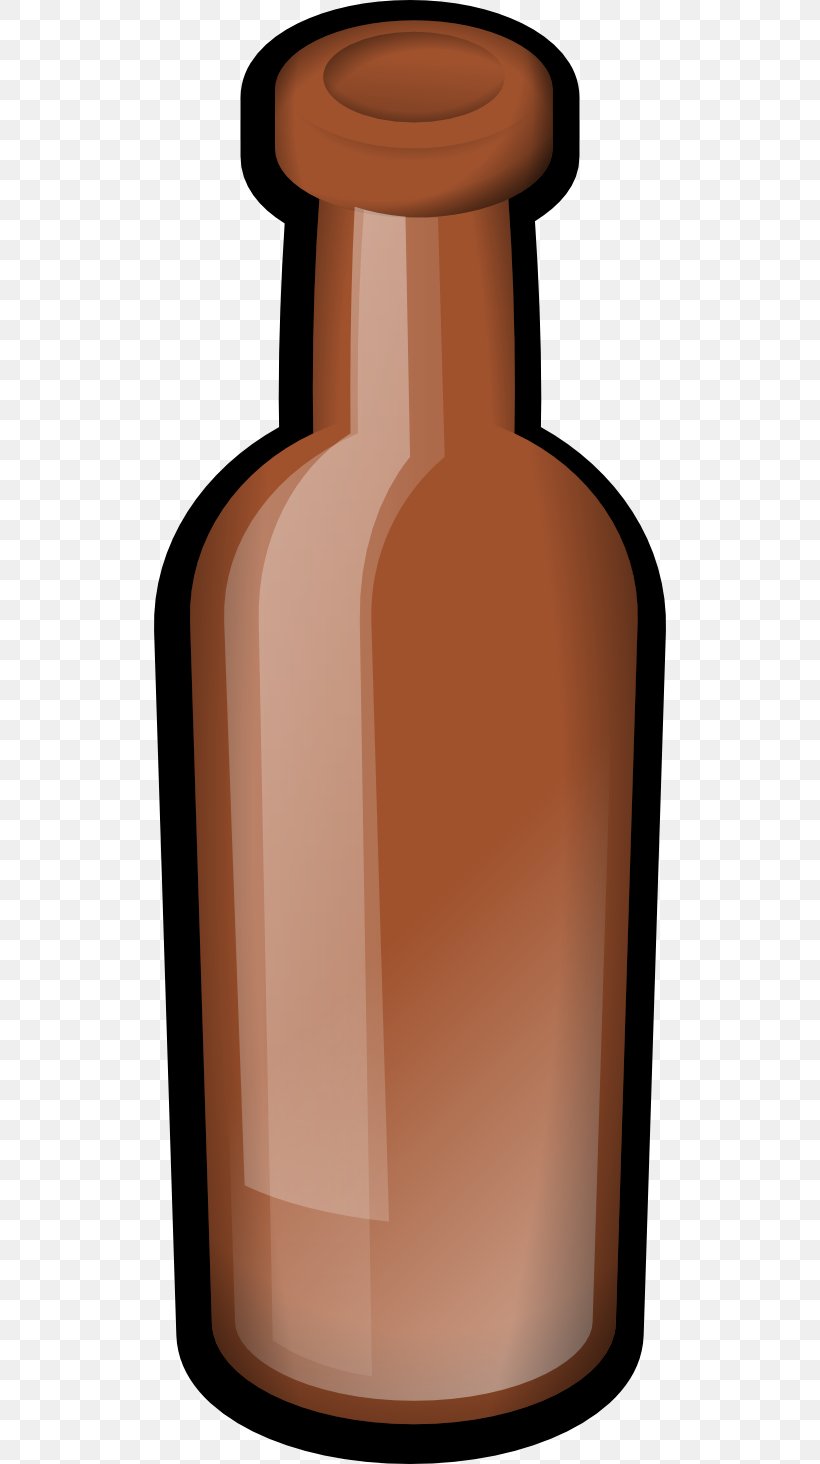 Glass Bottle Bottle Cap Clip Art, PNG, 512x1464px, Glass Bottle, Bottle, Bottle Cap, Bung, Container Download Free